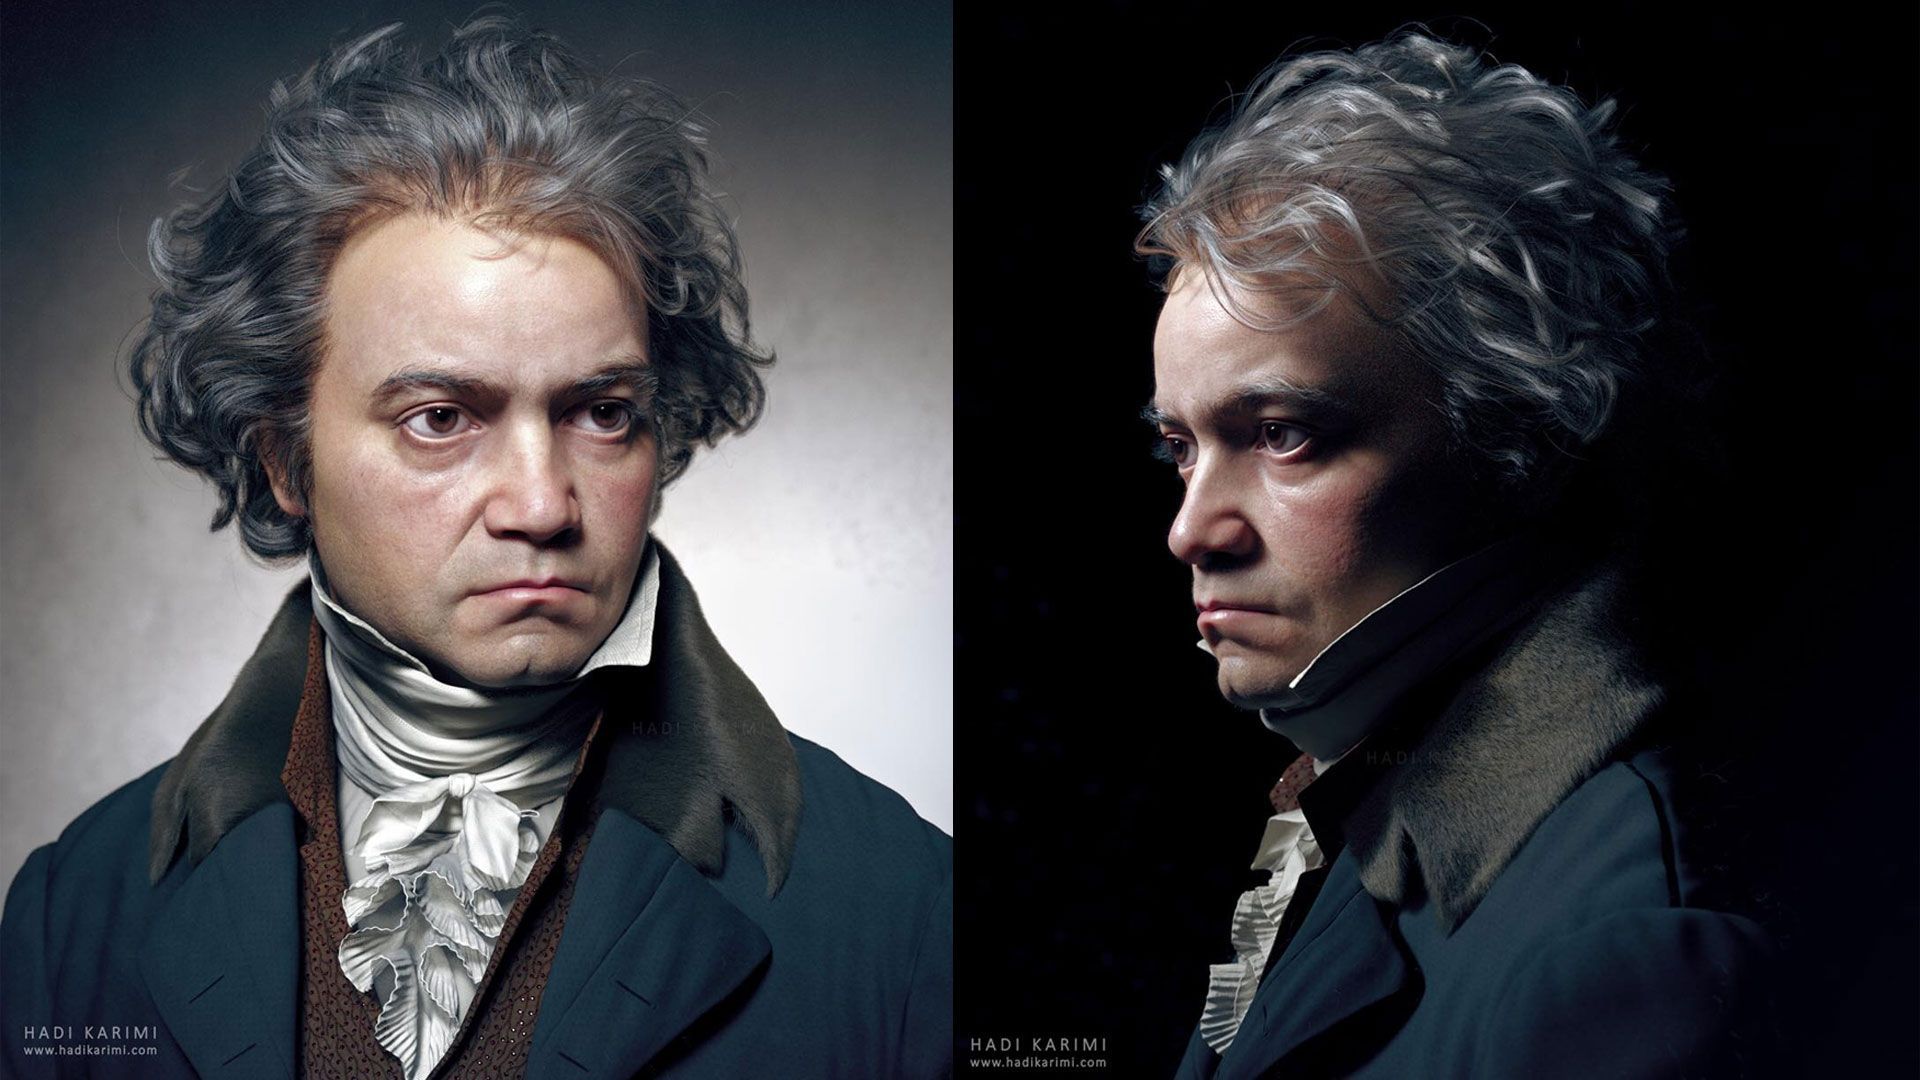 Le portrait 3D de Ludwig van Beethoven a été réalisé par l’artiste plasticien iranien Hadi Karimi